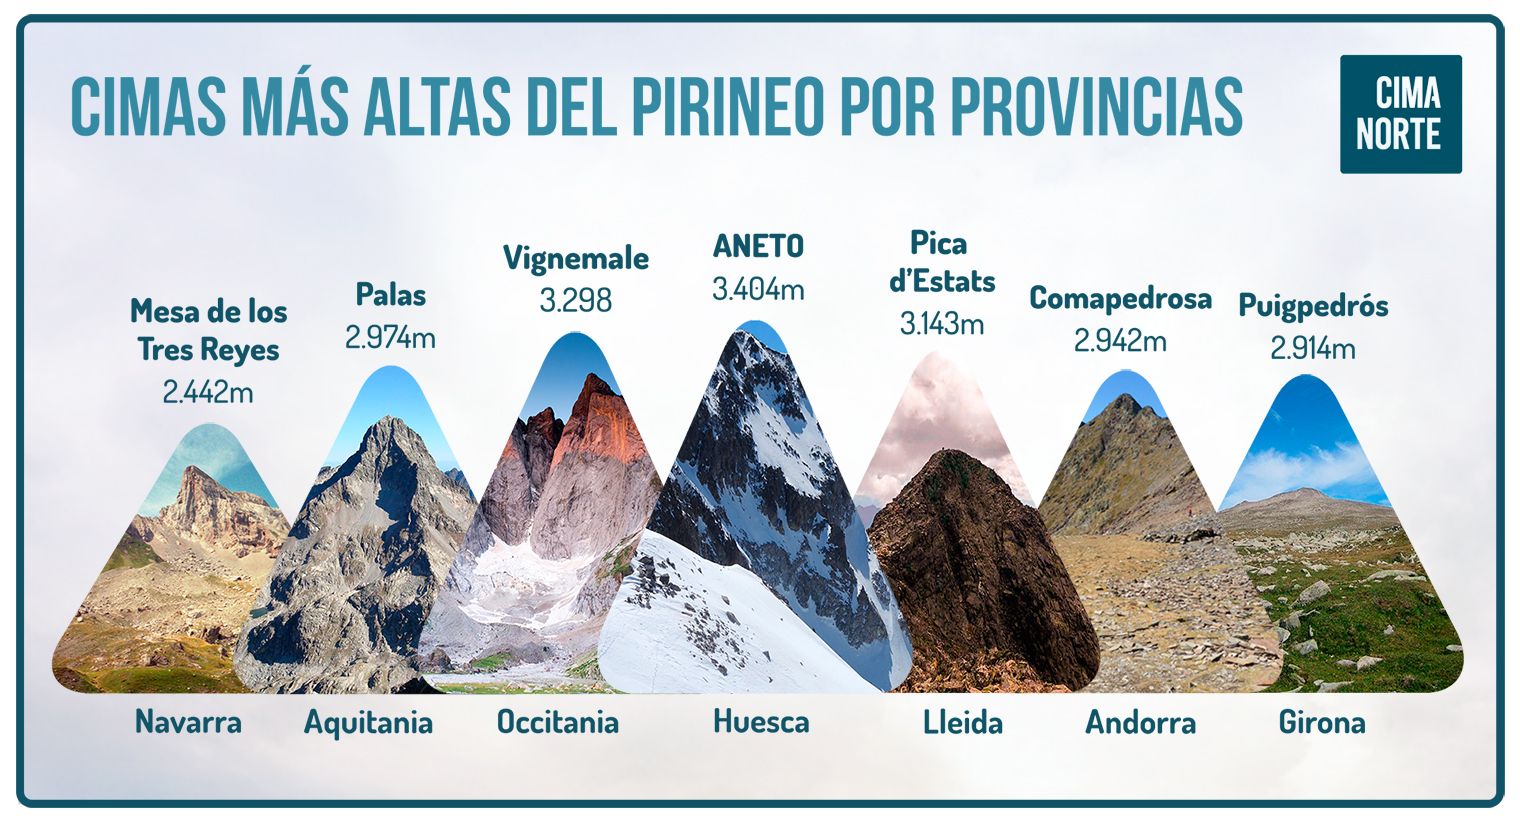 cimas más altas del pirineo por provincias mapa infografia cima norte pirineos pyrenees